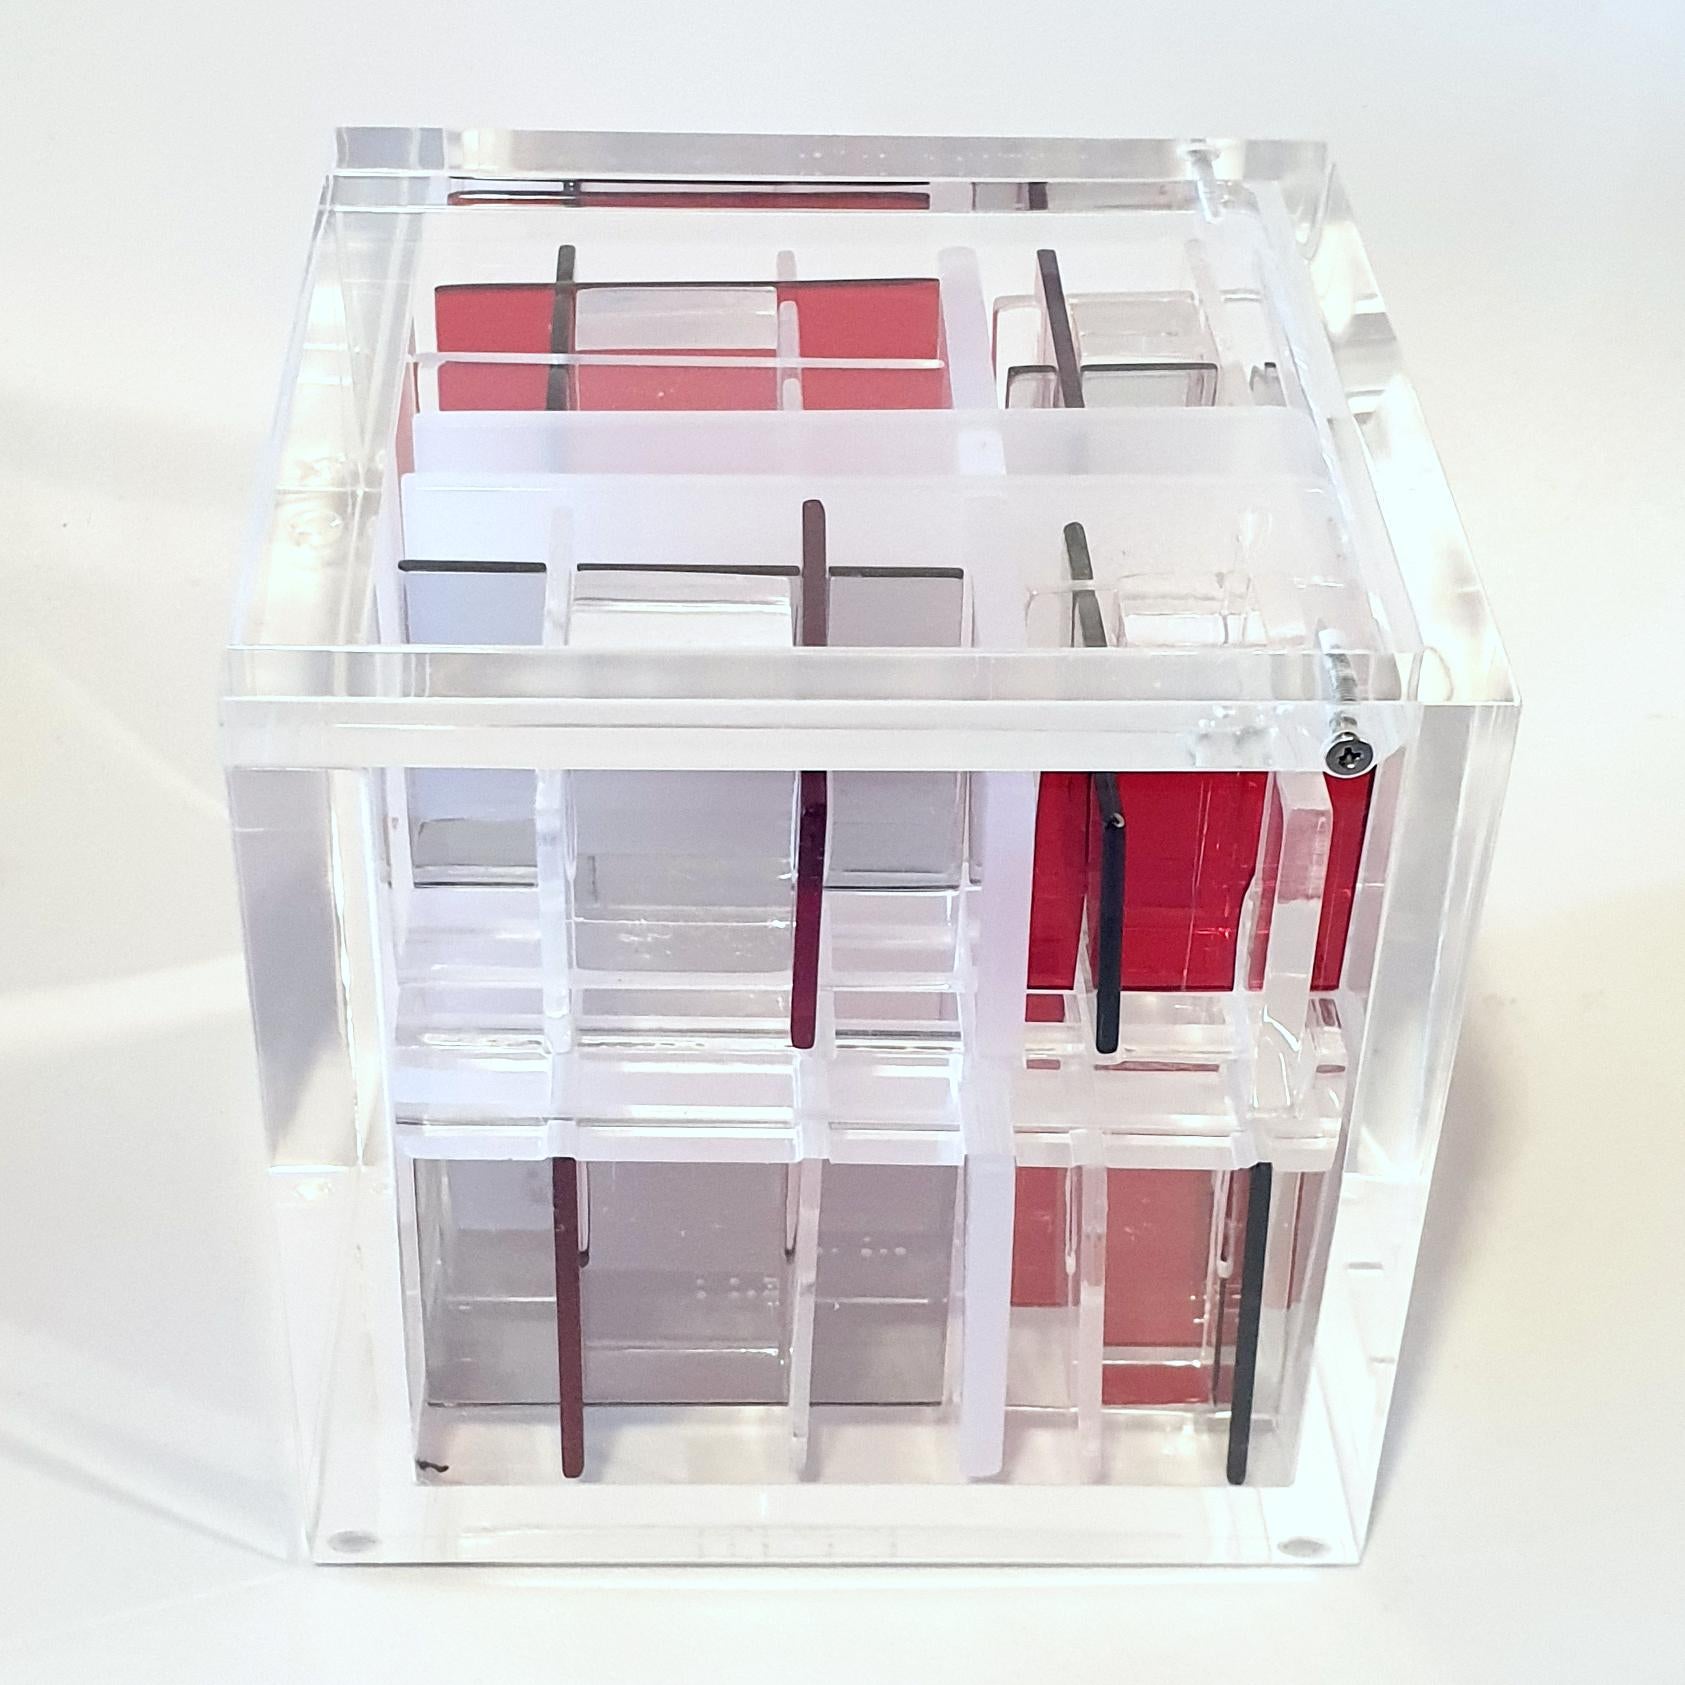 System Red-Grey est une sculpture cubique contemporaine unique de petite taille réalisée par le célèbre couple d'artistes néerlandais Nel Haringa et Fred Olijve, dans laquelle ils explorent les effets de compositions opposées en rouge, gris et